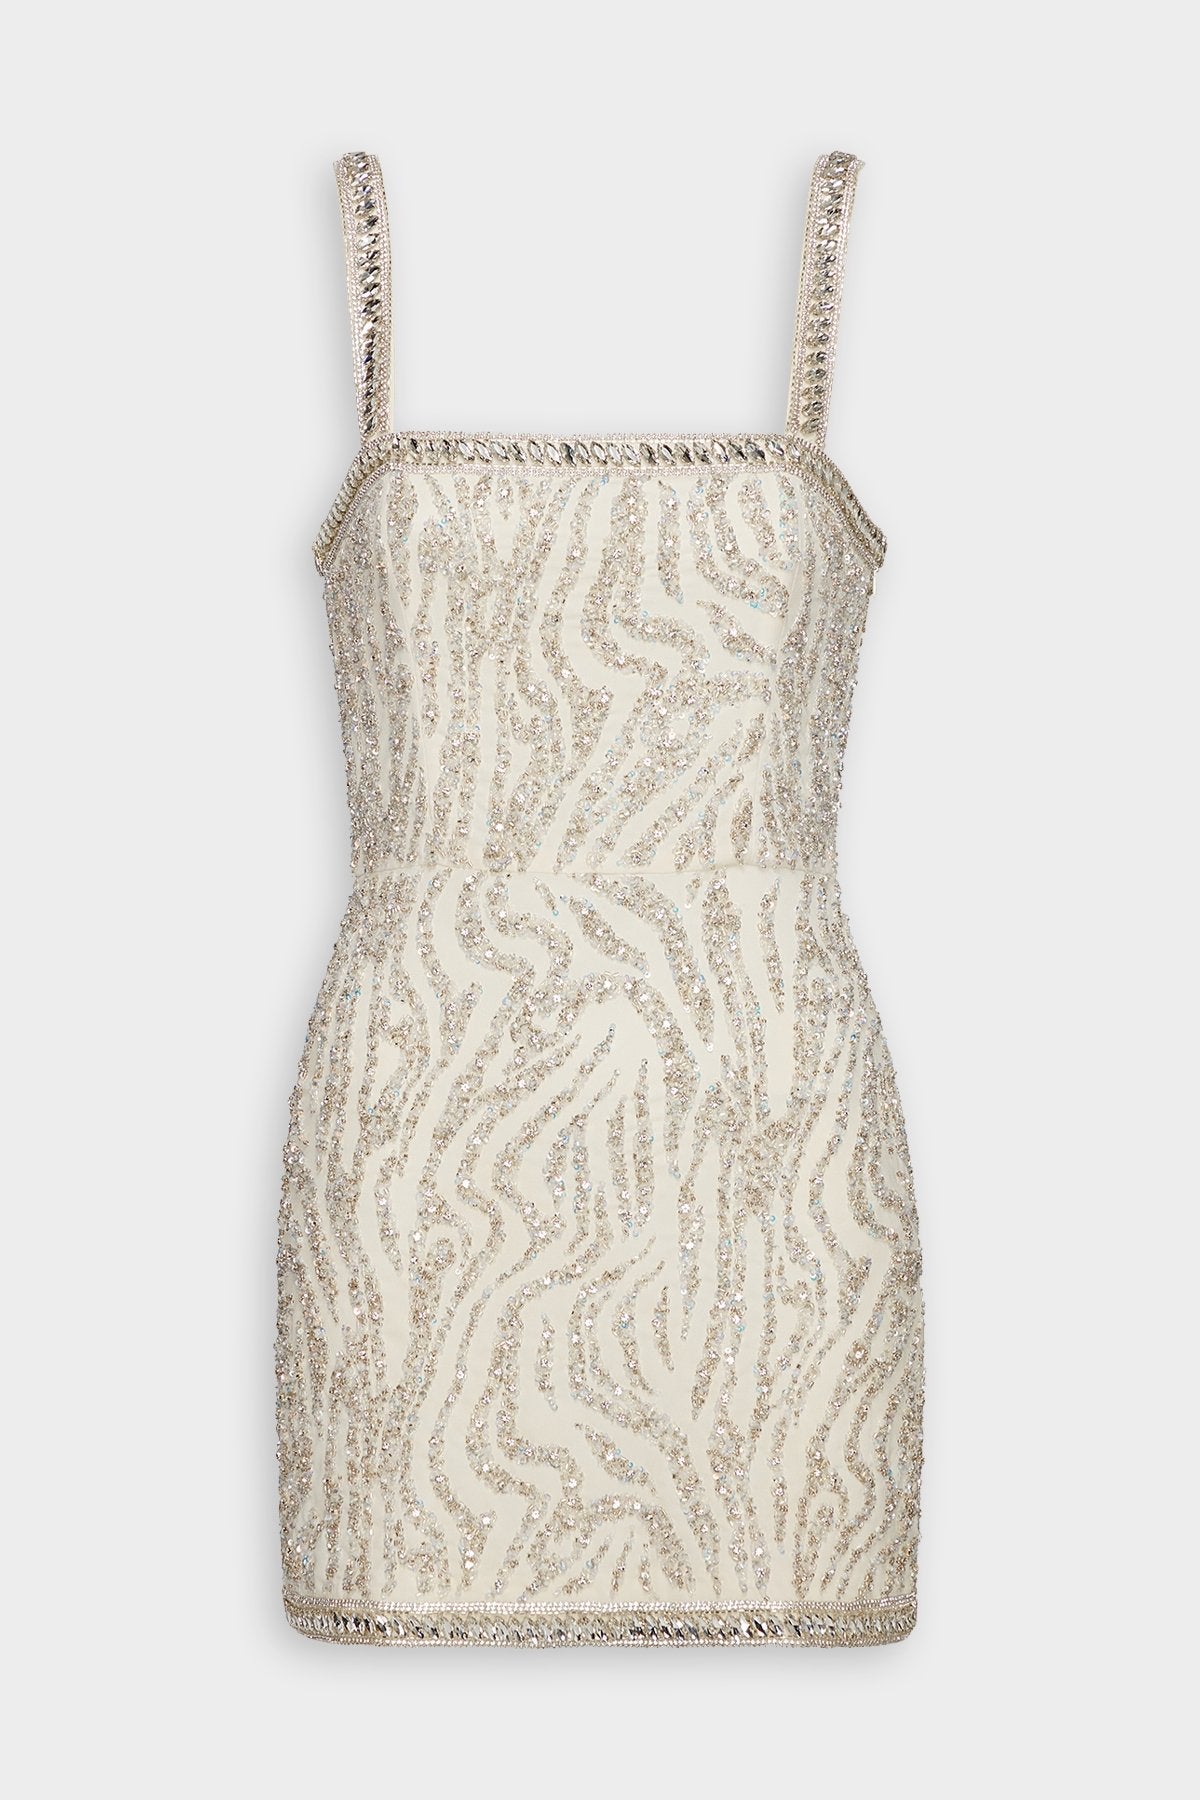 Santorini Dress in White Tiger Stripe - shop-olivia.com